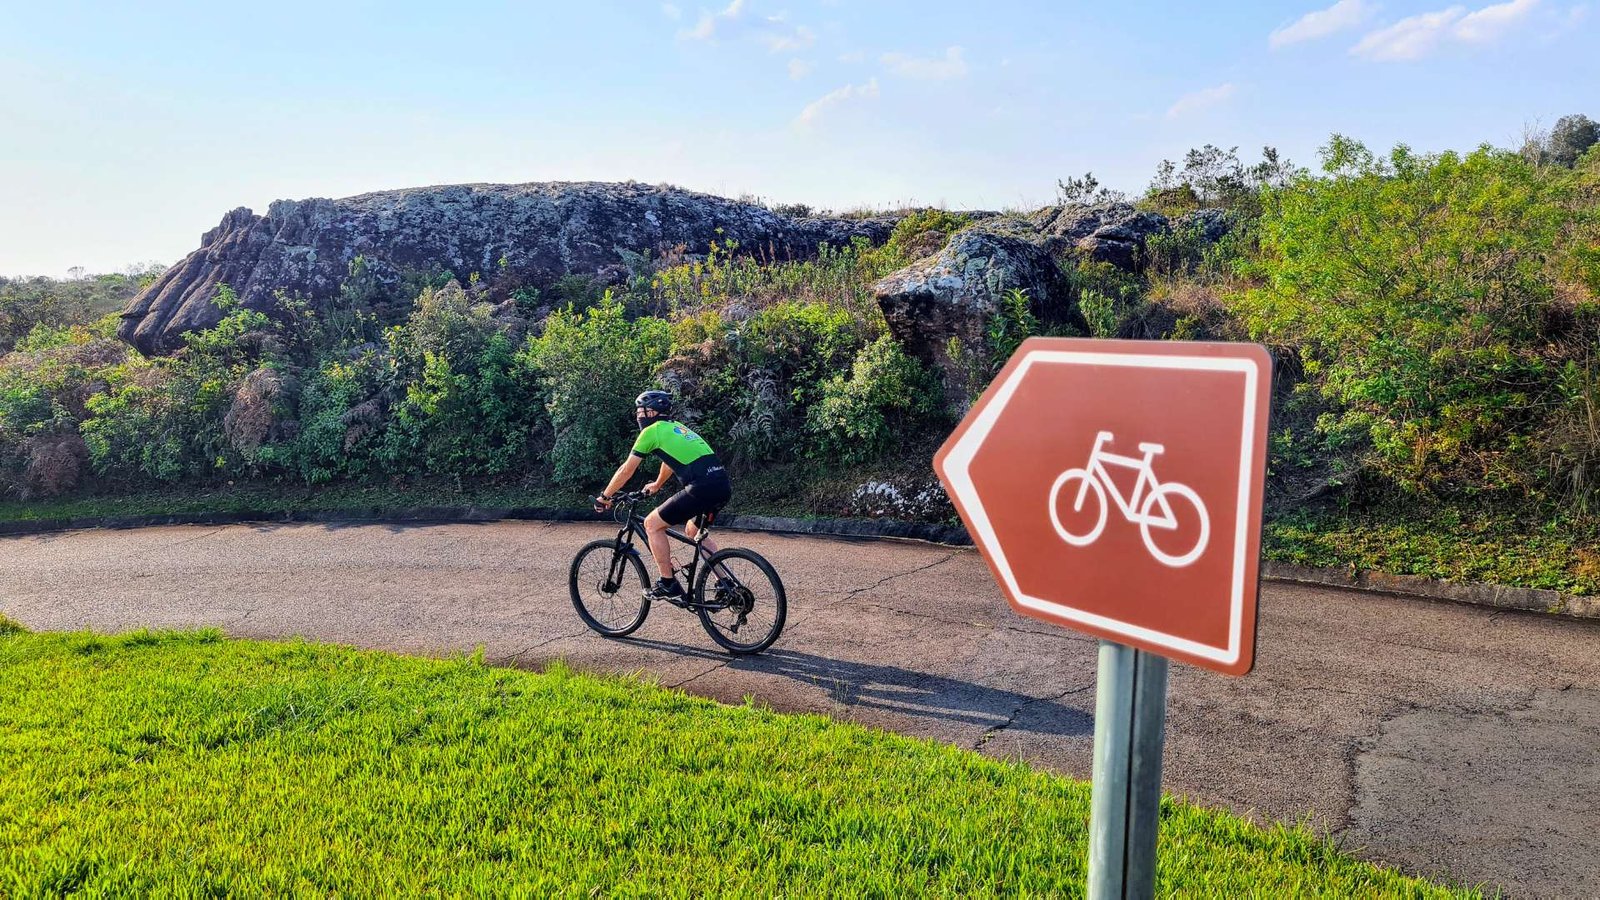 O ciclista pedala e contempla o cicloturismo autoguiado através da sinalização direcional.